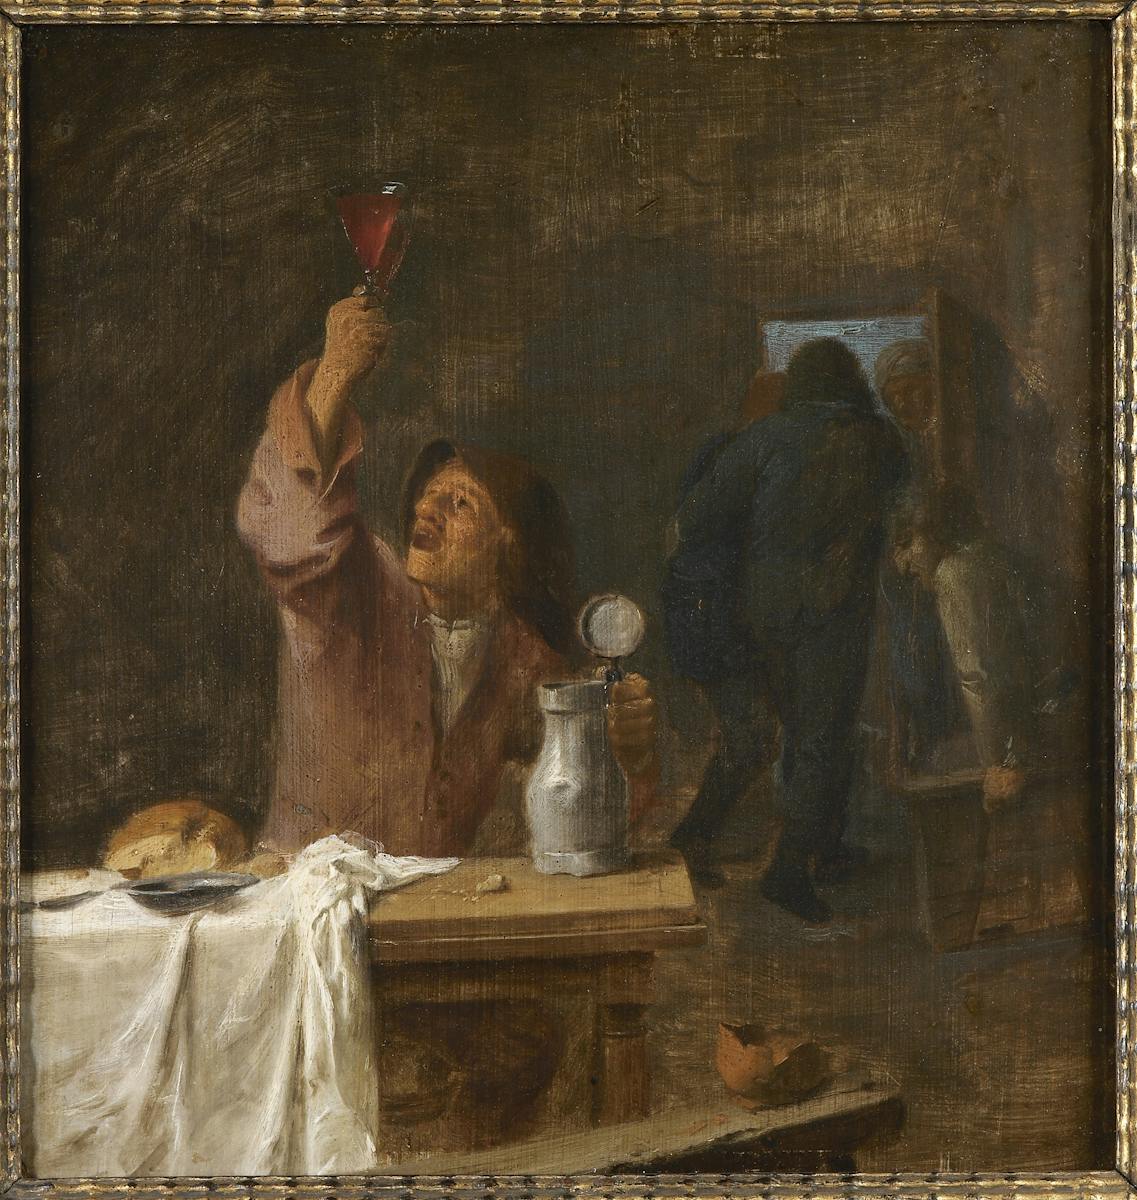 Adriaen Brouwer, Peasant drinking